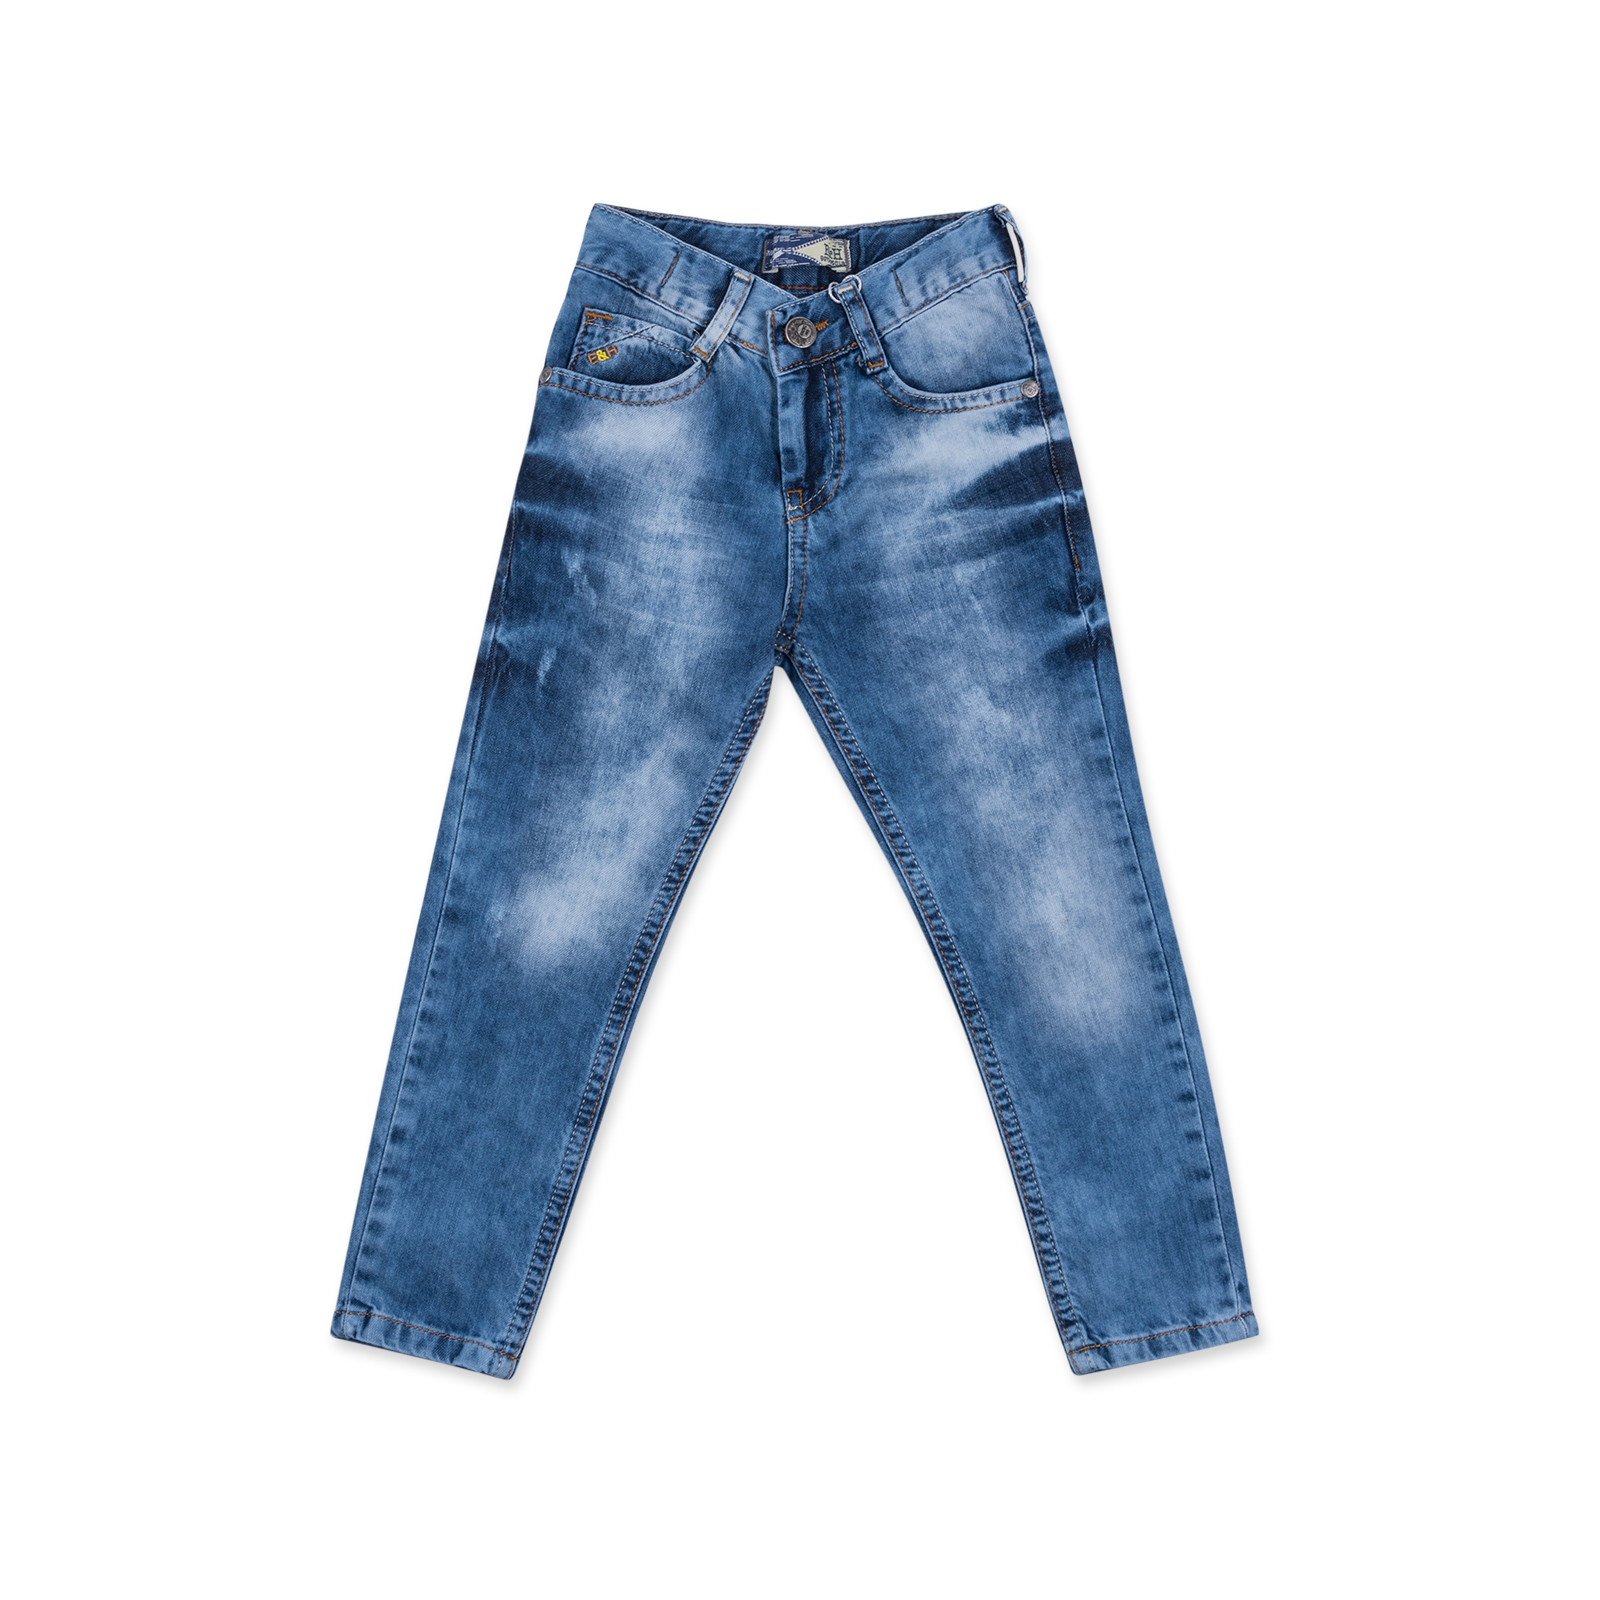 Джинсы Breeze с потертостями (20072-86B-jeans)